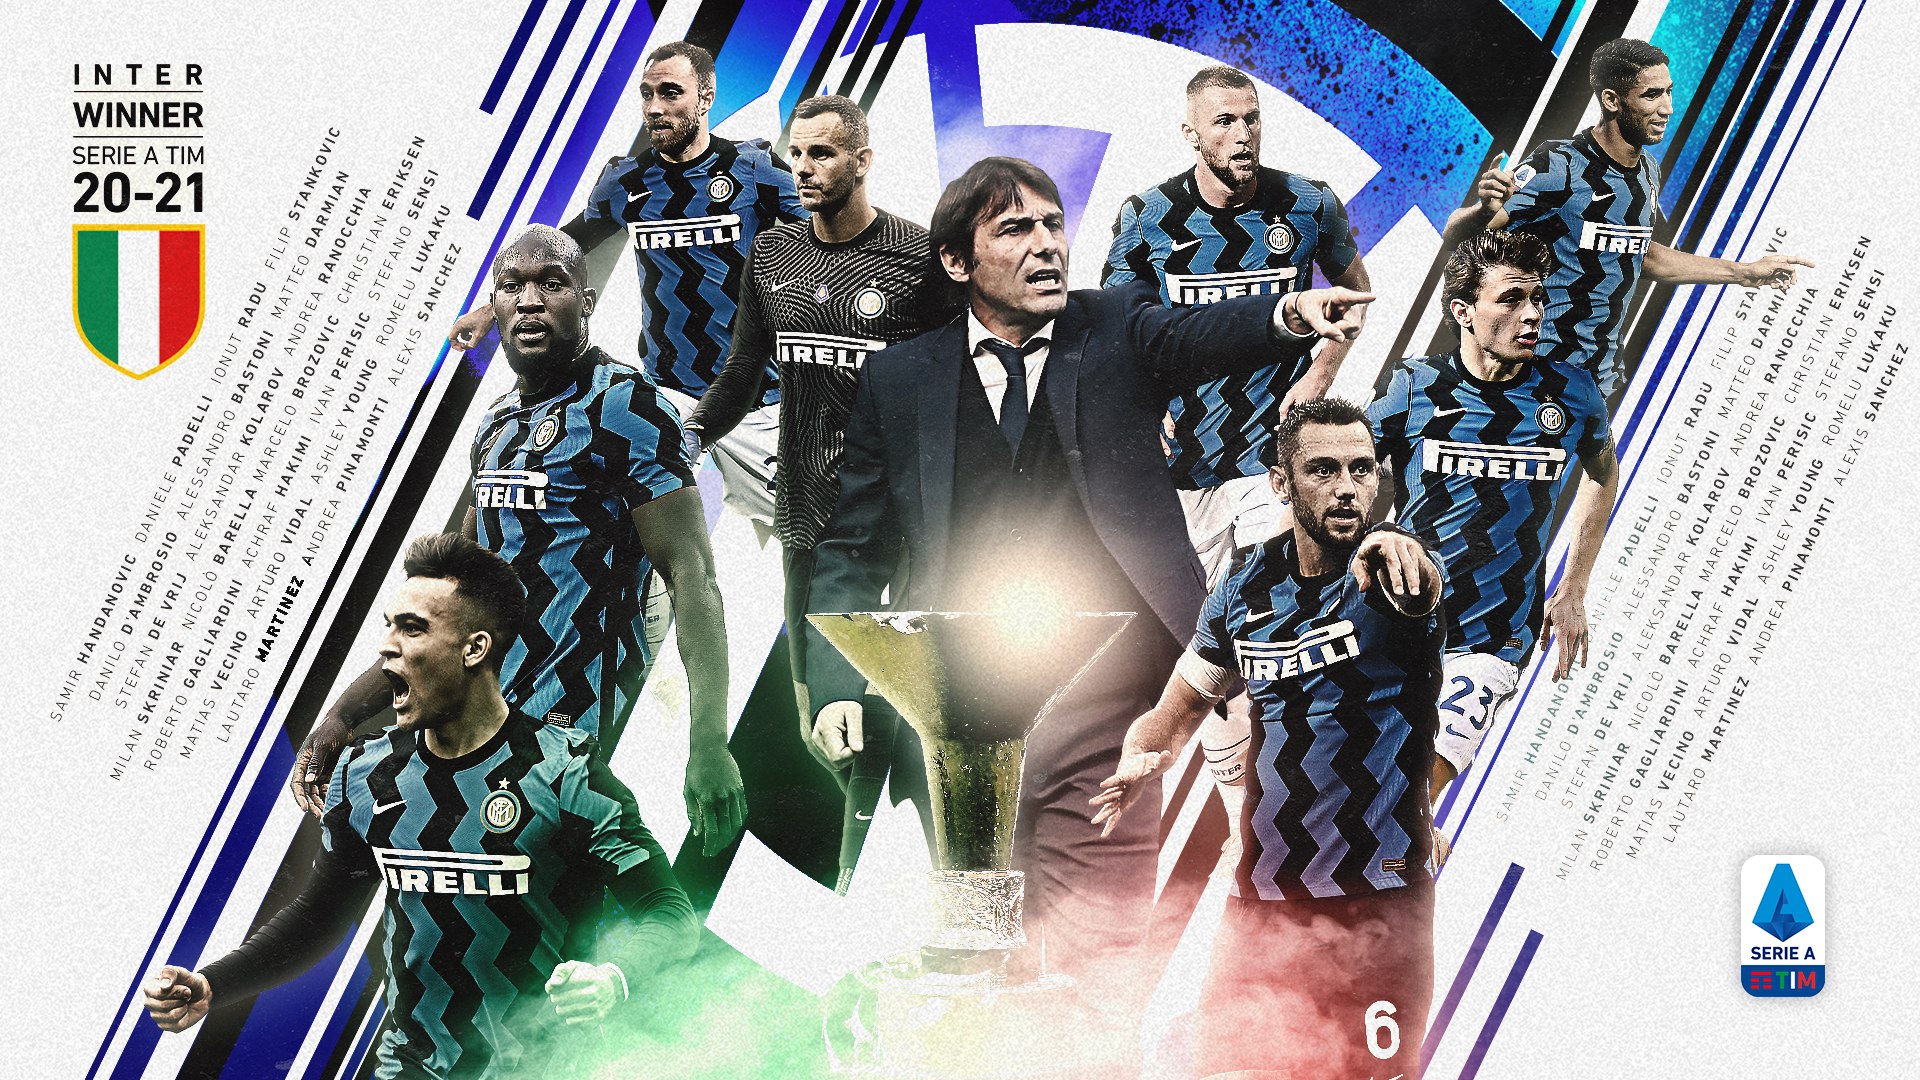 Campeonato Italiano: história, campeões e mais da Serie A